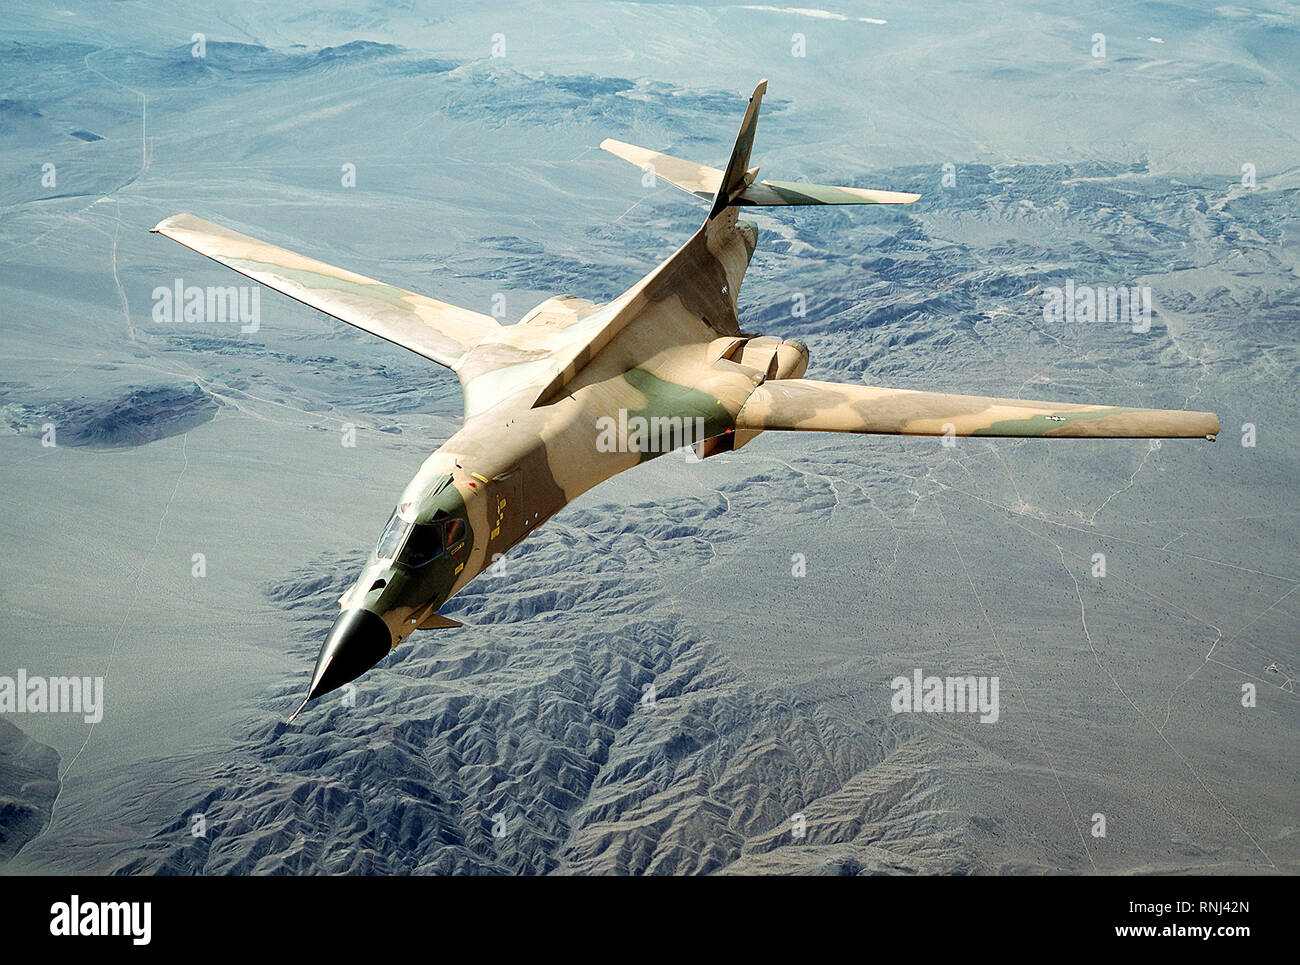 1980 - Un avion vue frontale d'un bombardier B-1 avec son nouveau schéma de peinture de camouflage Banque D'Images